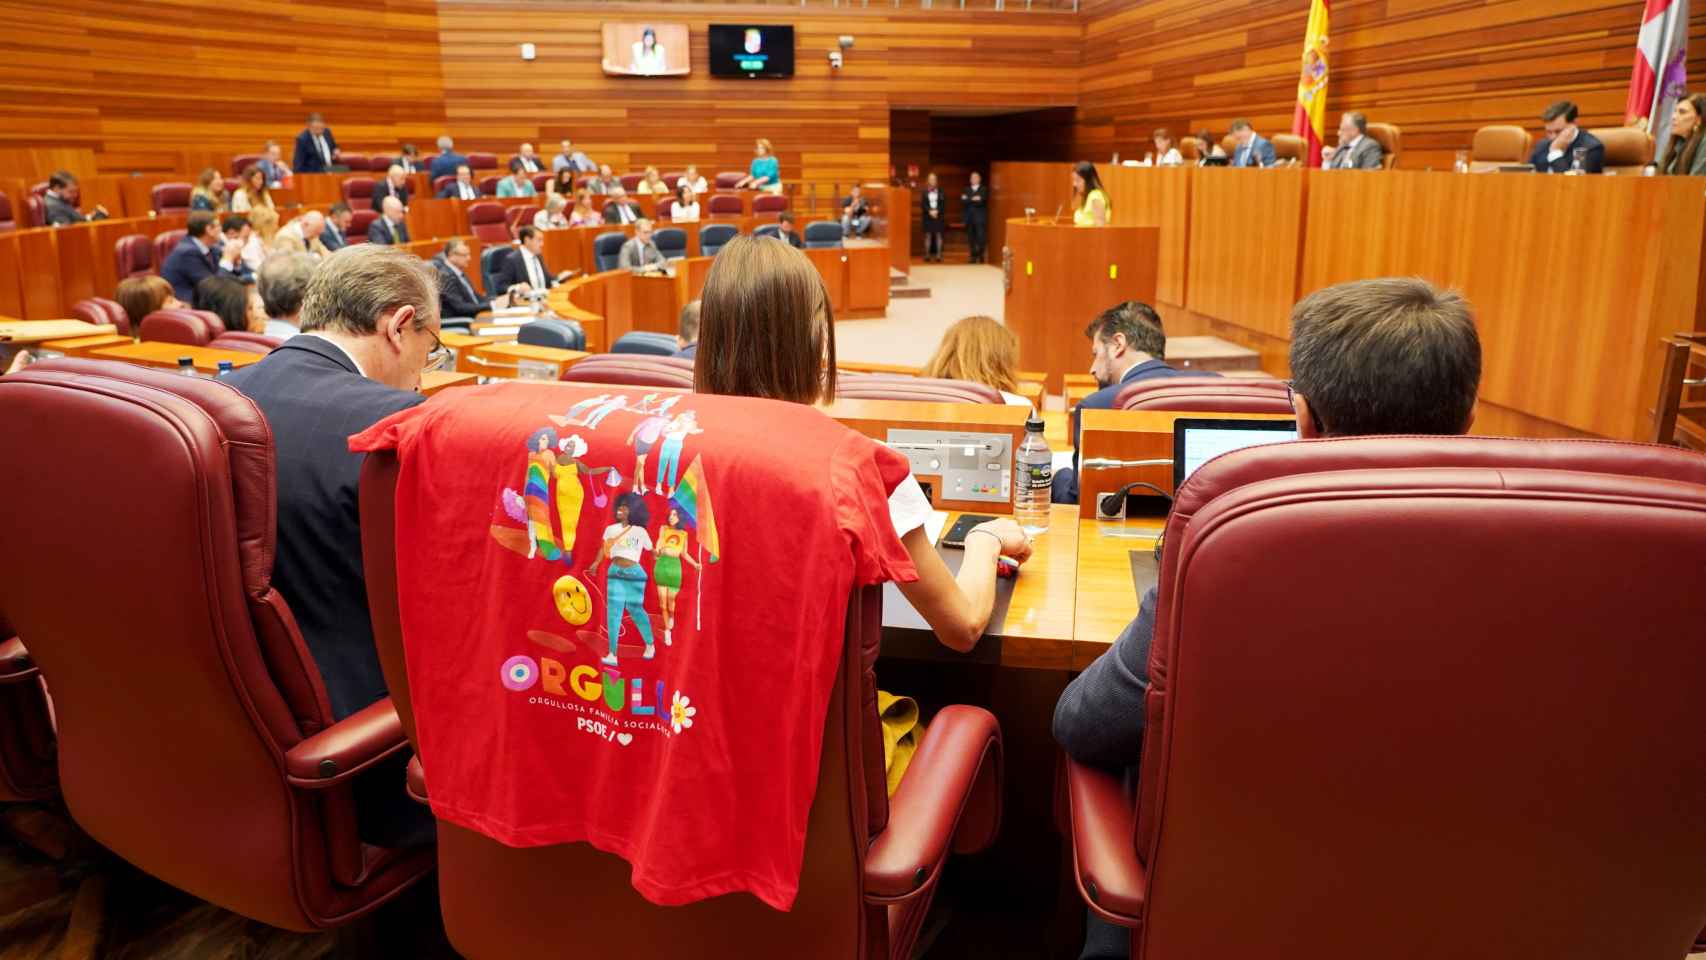 La procuradora socialista Laura Pelegrina coloca una camiseta del 'orgullo' sobre su asiento durante la segunda sesión del pleno de las Cortes de Castilla y León